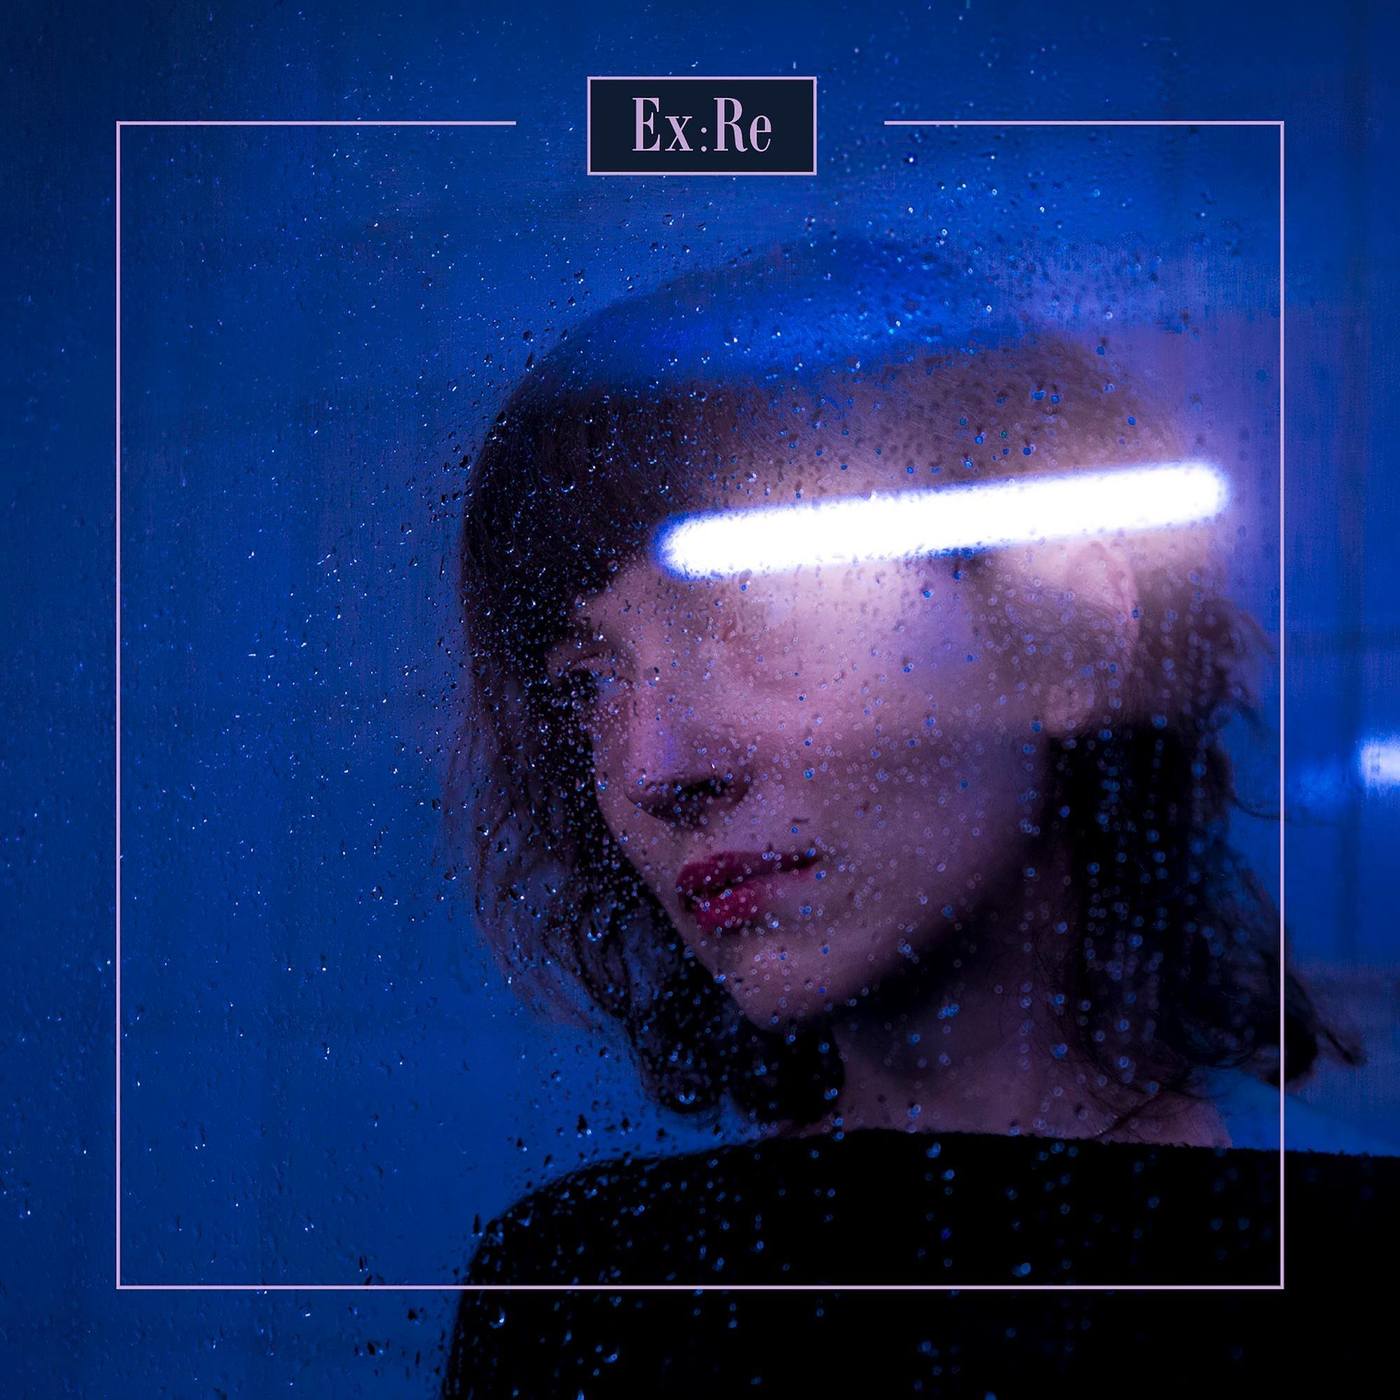 imagen 1 de Ex:Re y la compositora Josephine Stephenson reinterpretan su doloroso disco de debut.